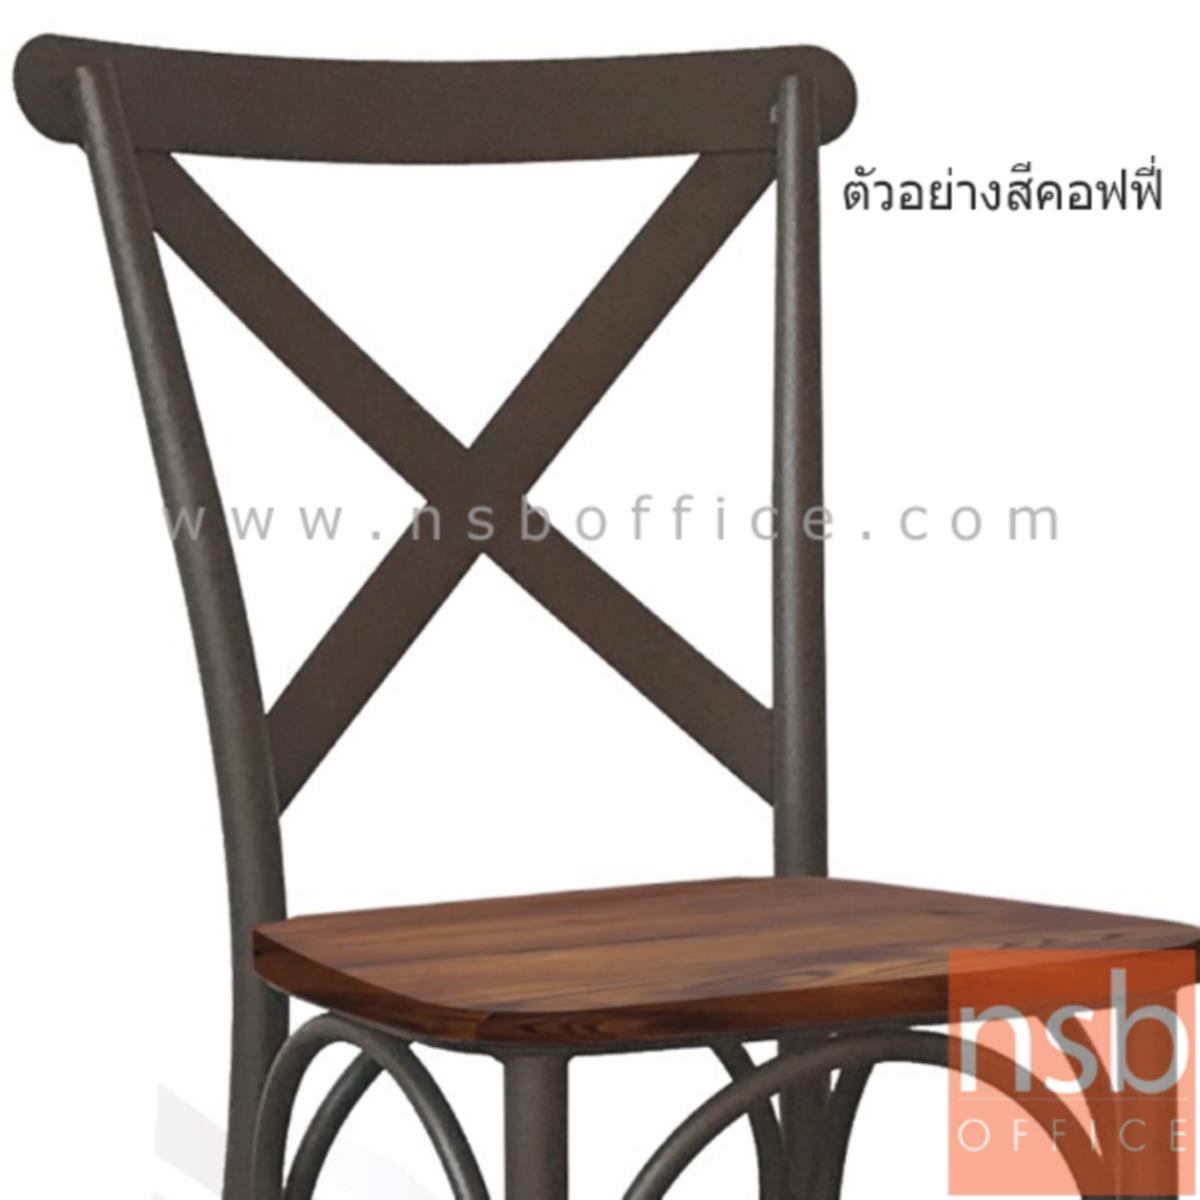 เก้าอี้โมเดิร์นไม้ ELM รุ่น Alicorp ขนาด 48W cm. โครงขาเหล็ก 